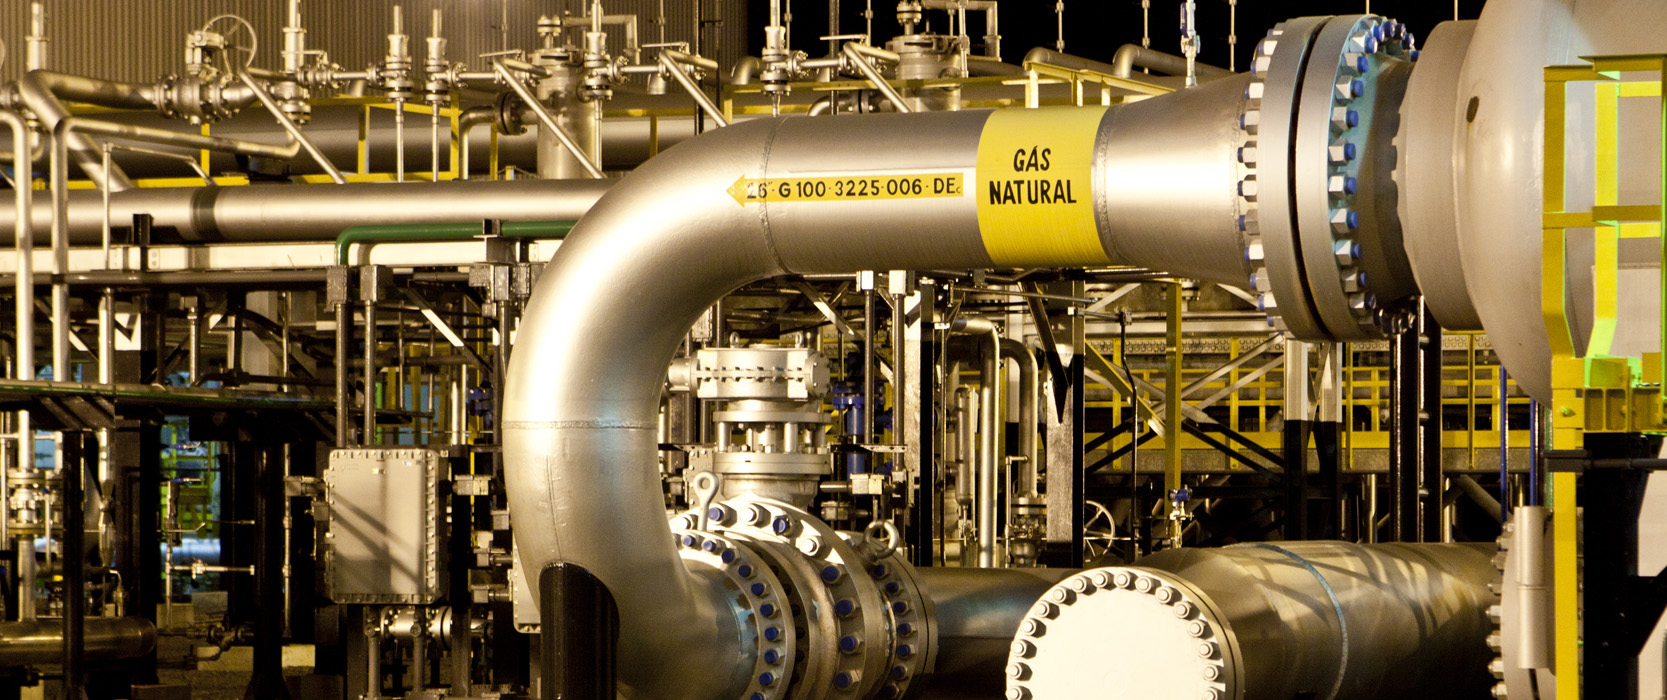 Petrobras, Galp e Sulgás contratam capacidade no Gasbol. Na imagem: Instalações e rede de dutos metálicos, na cor dourada, do Gasbol – Gasoduto Bolívia-Brasil (Foto: Divulgação TBG)